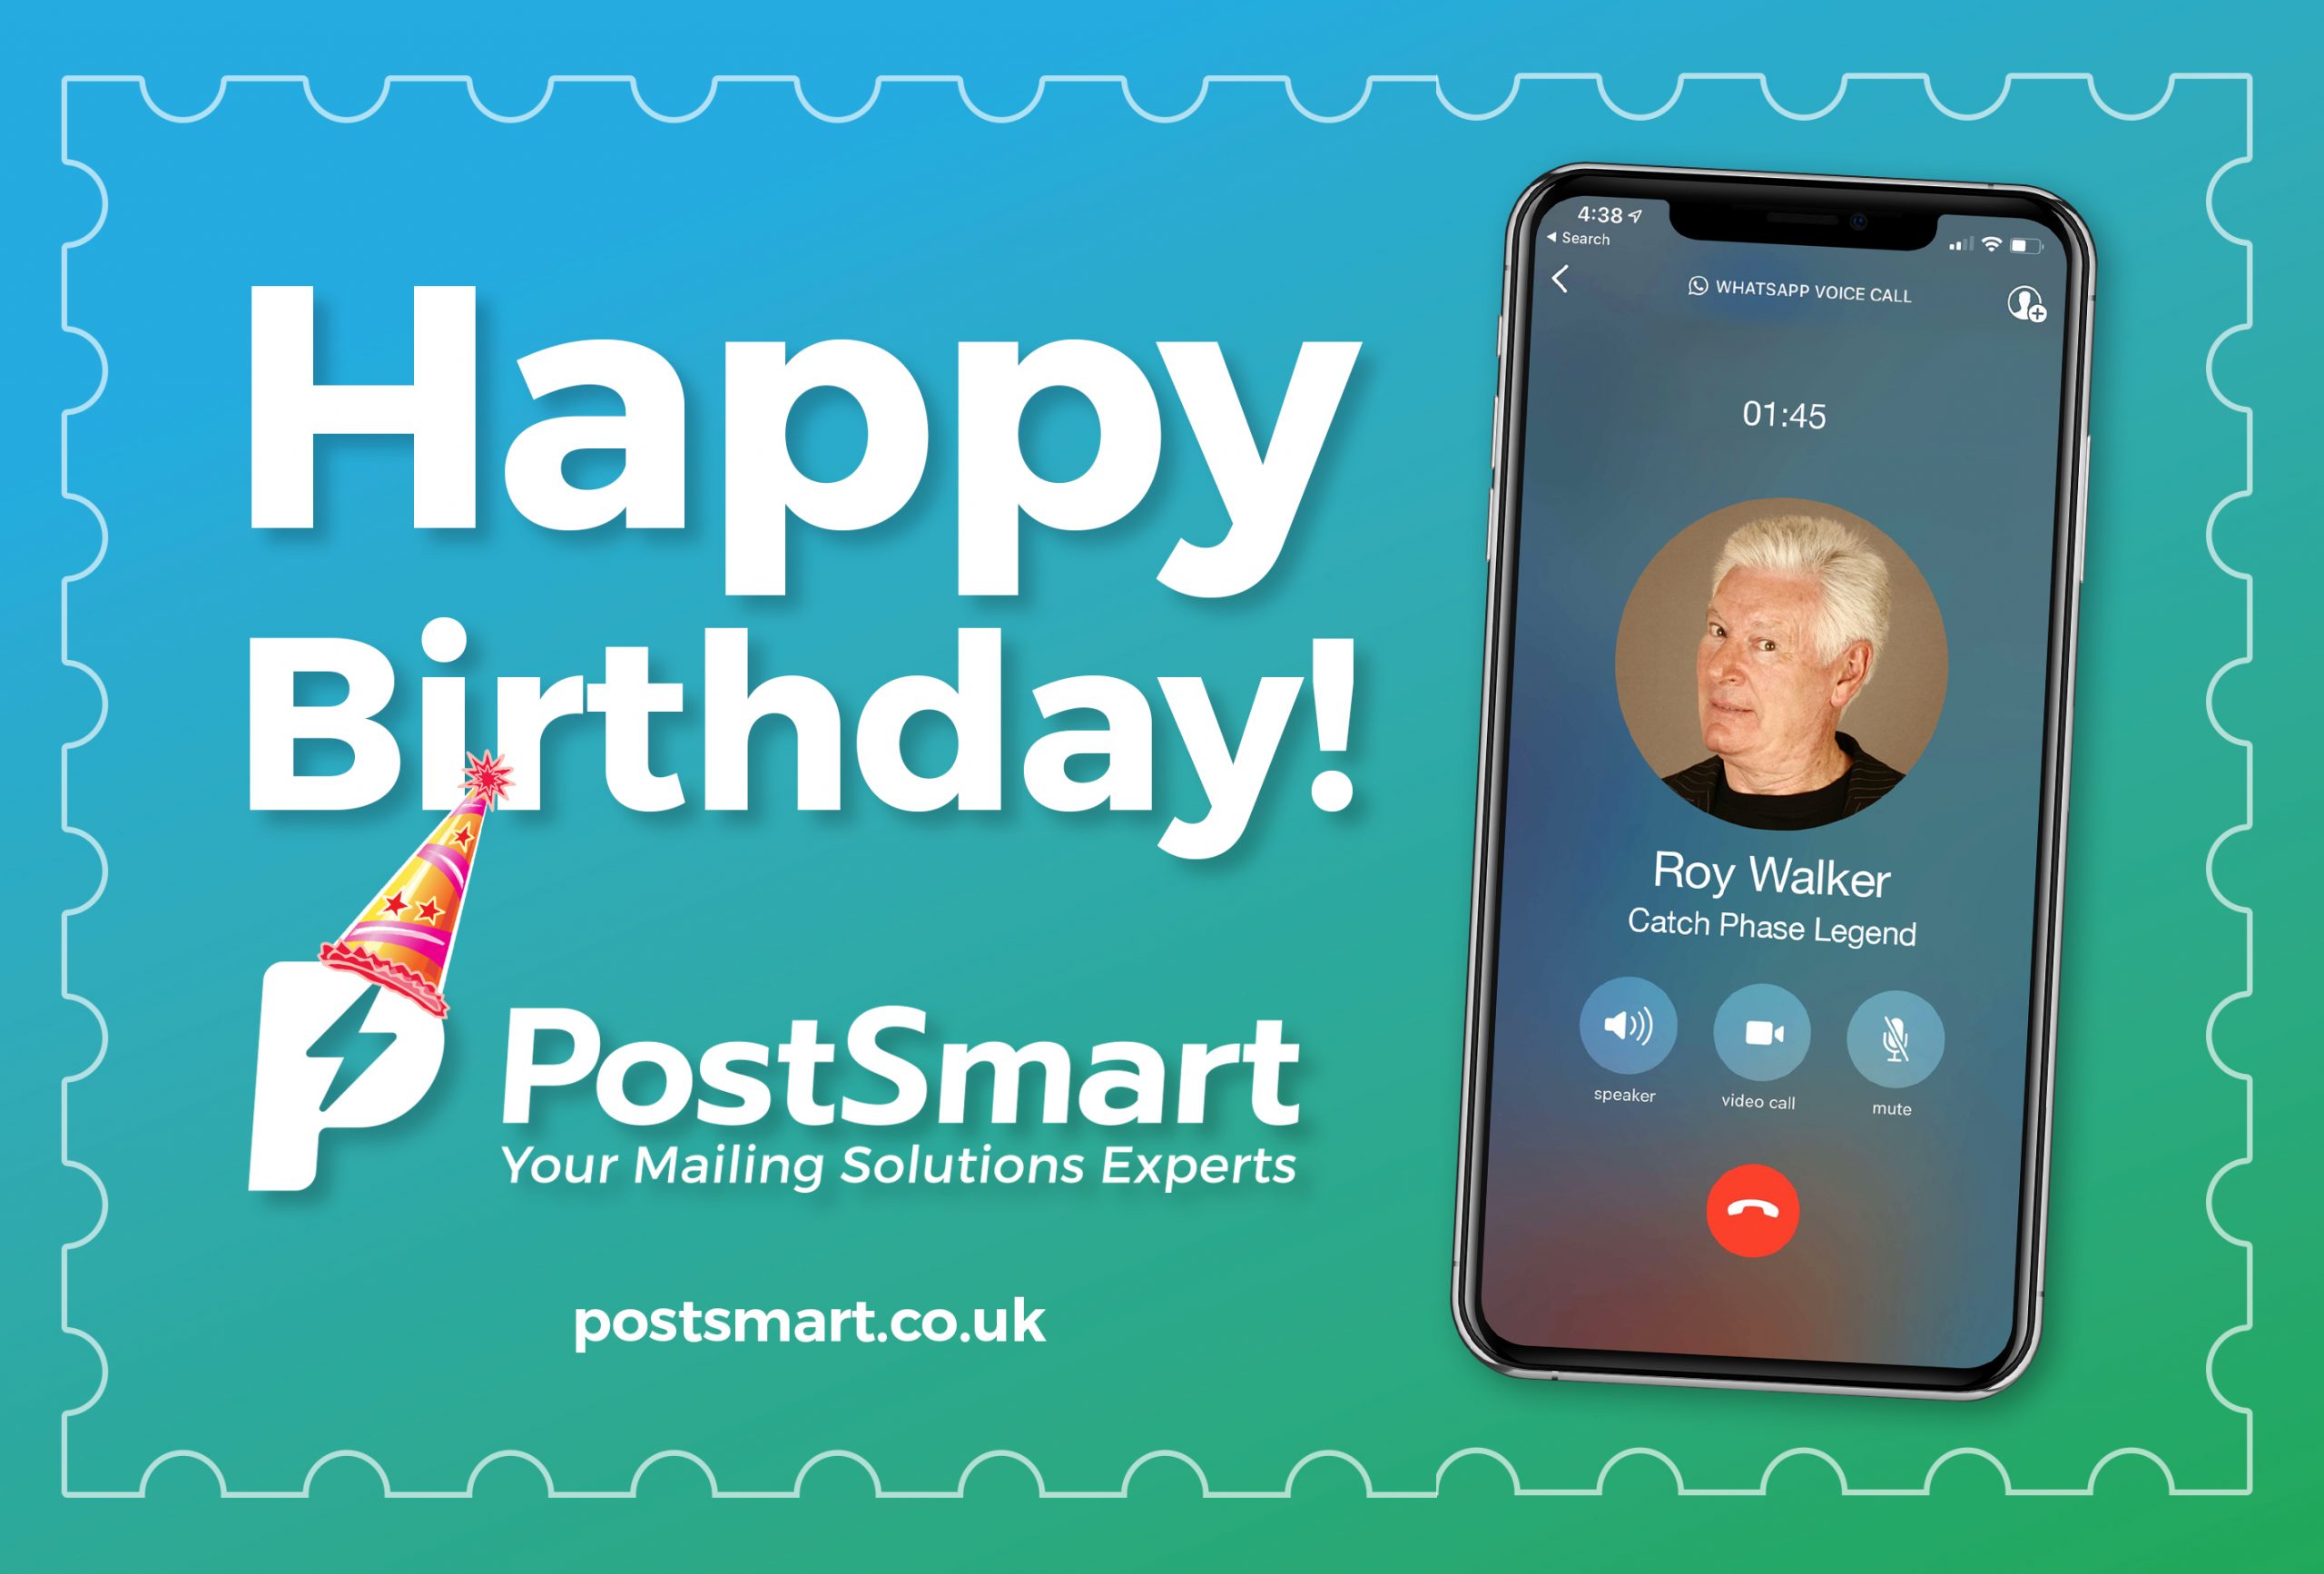 Happy Birthday PostSmart!